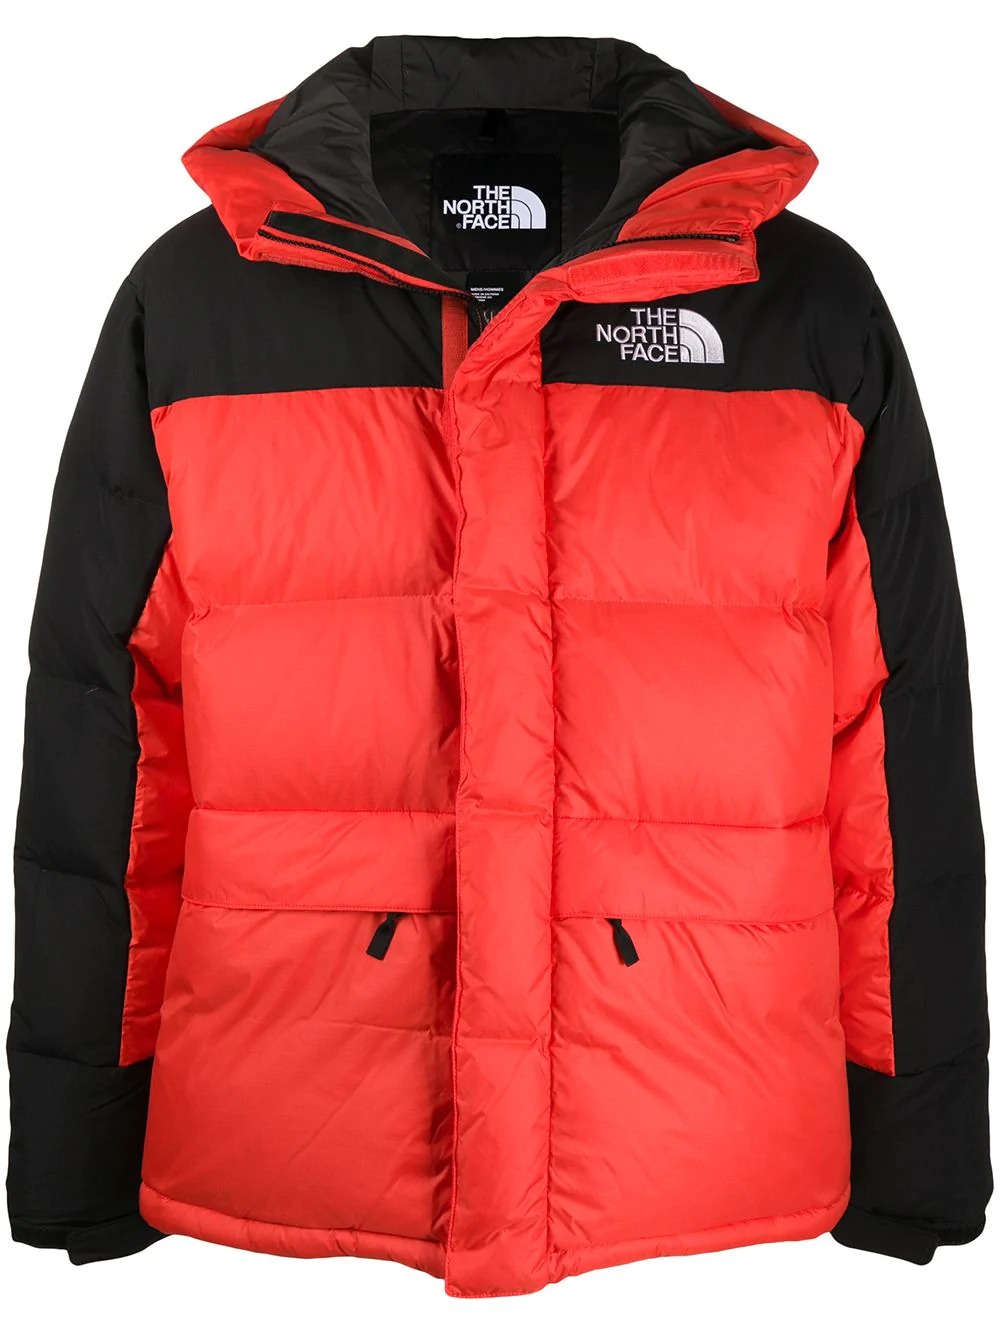 赤のダウンジャケットが冬コーデをリフレッシュするのに使える おすすめアイテムを厳選紹介 メンズファッションメディア Iicf